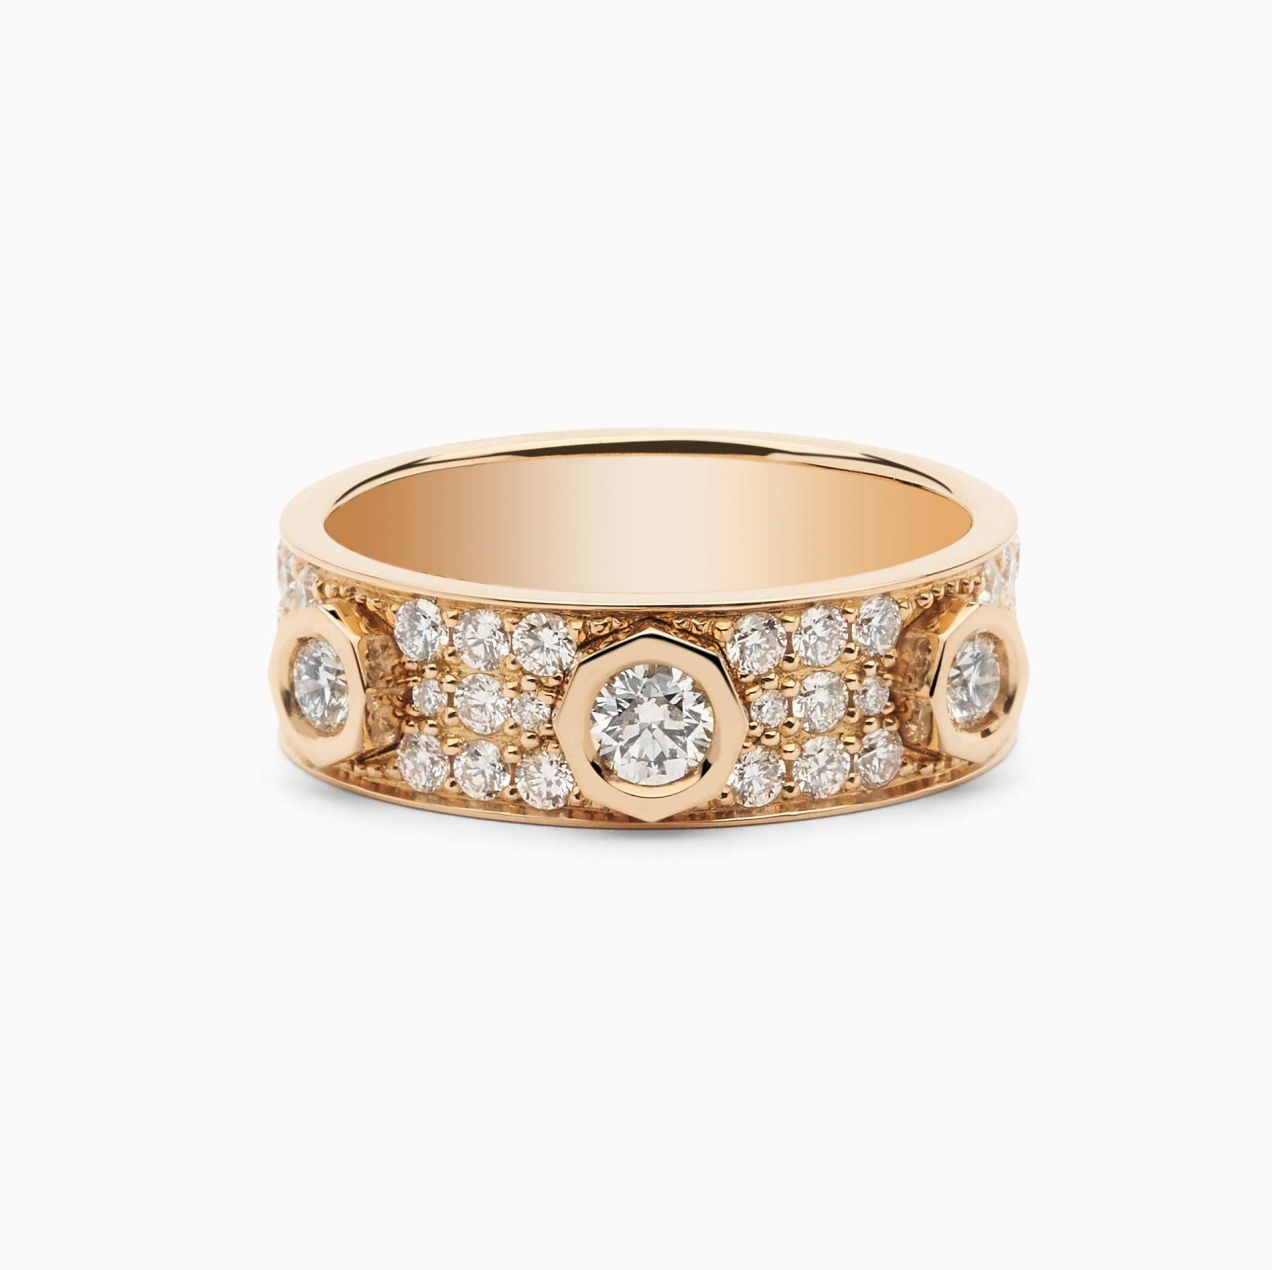 Rose gold with three diamonds and diamonds pavé ring